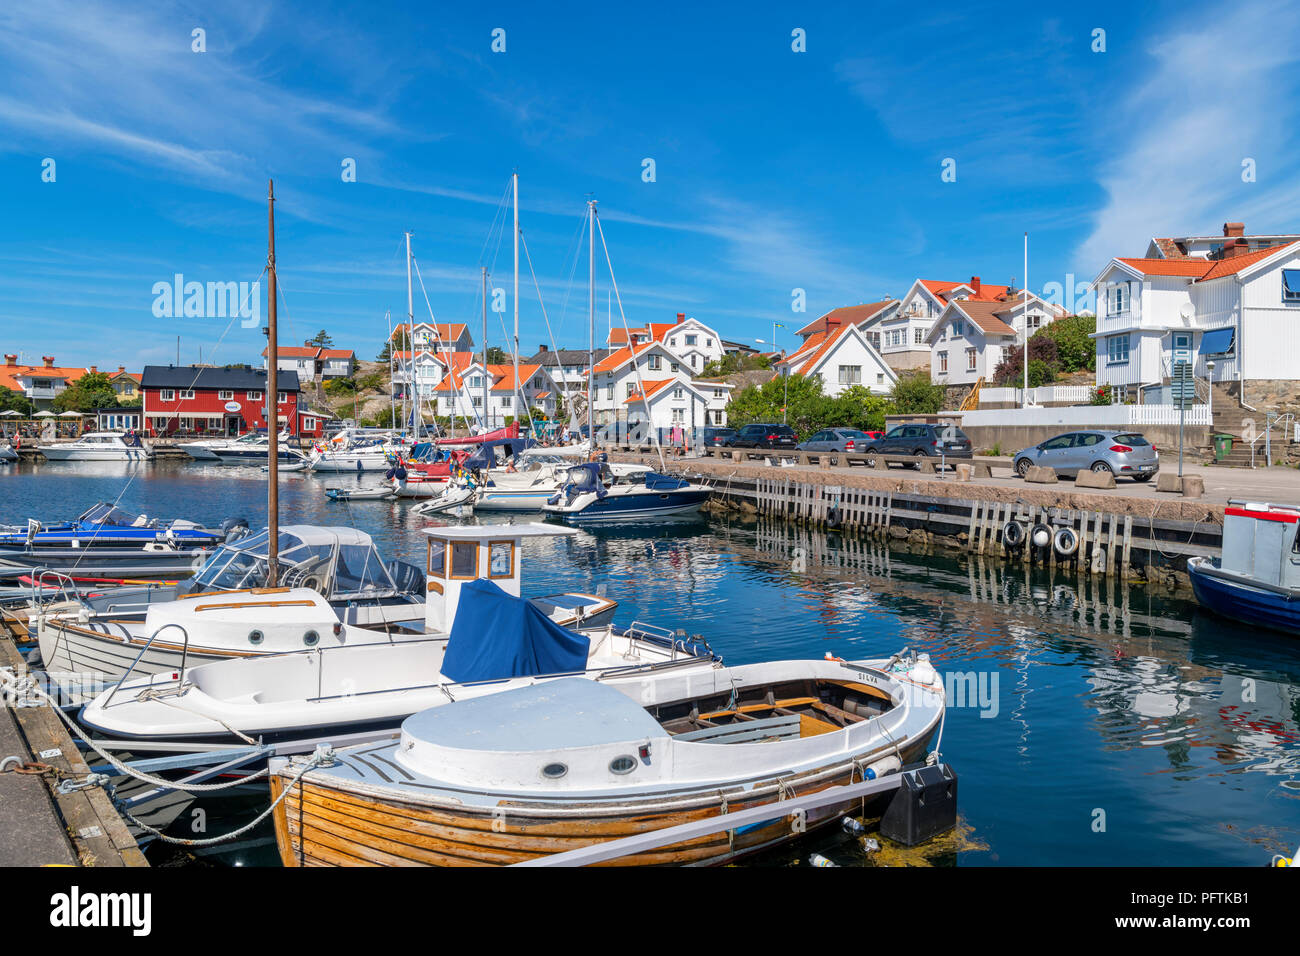 The harbour in the fishing village of Mollösund, Orust, Bohuslän Coast, Götaland, Sweden Stock Photo